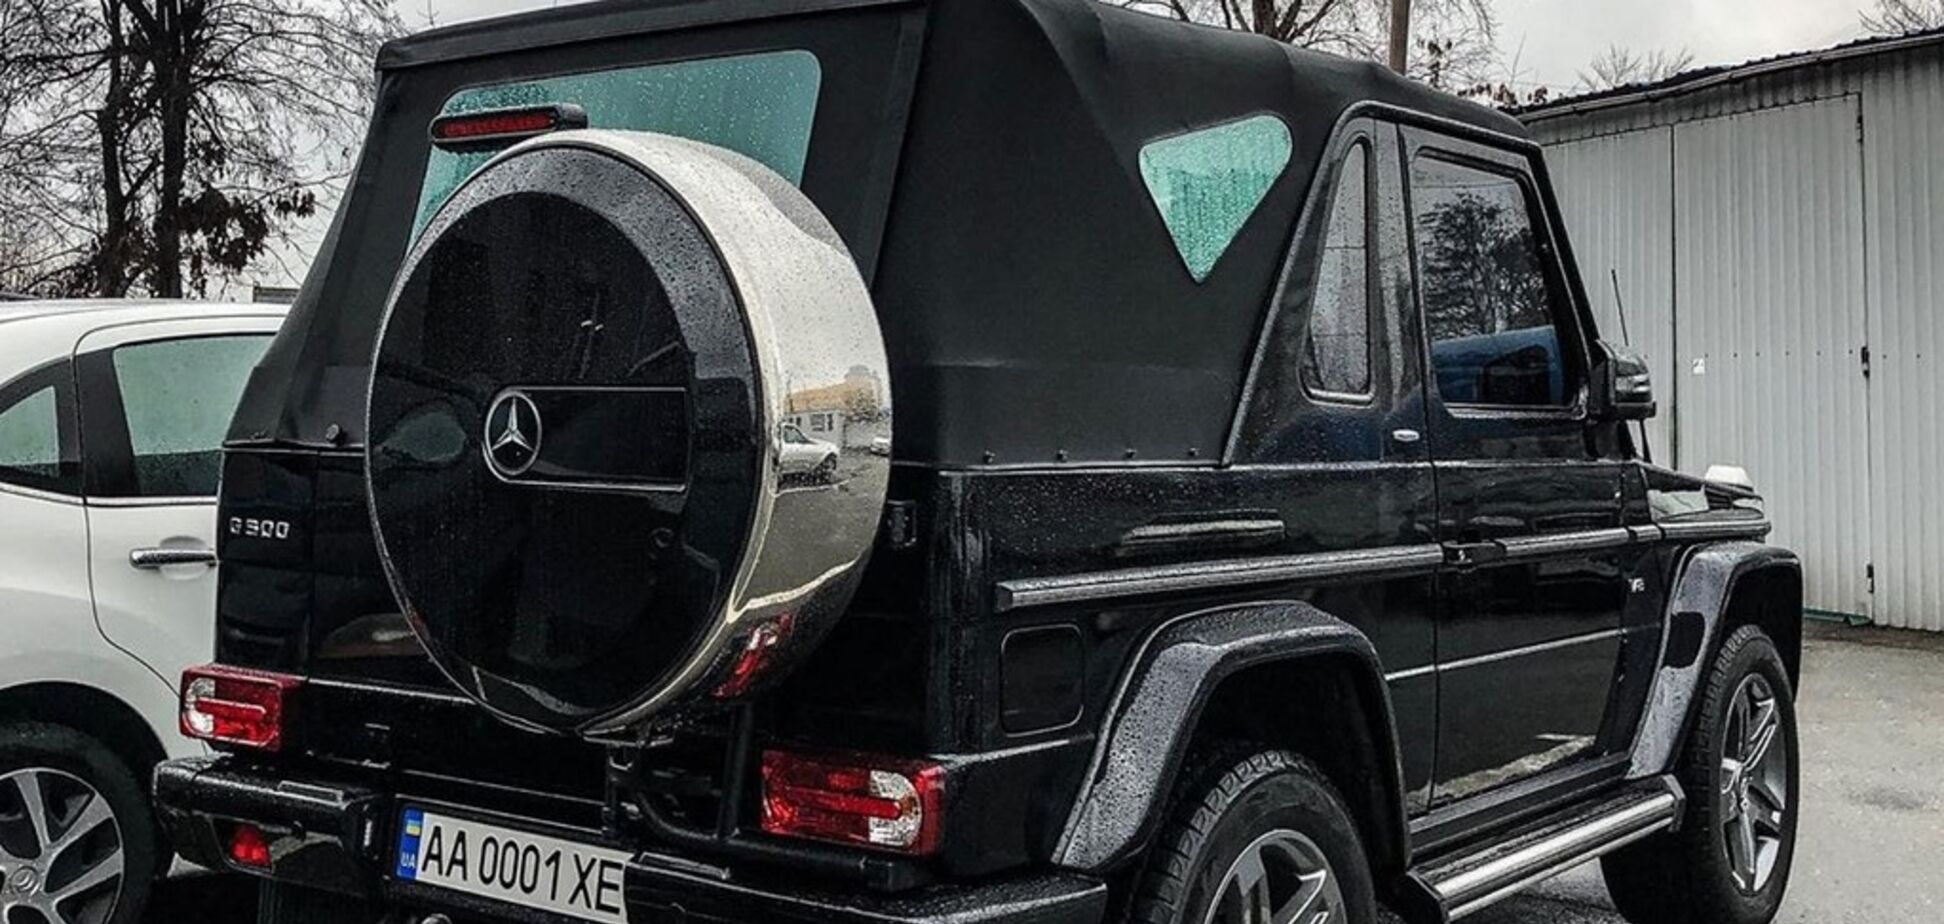 Як у Януковича: у Києві зняли рідкісний Mercedes за 400 000 євро